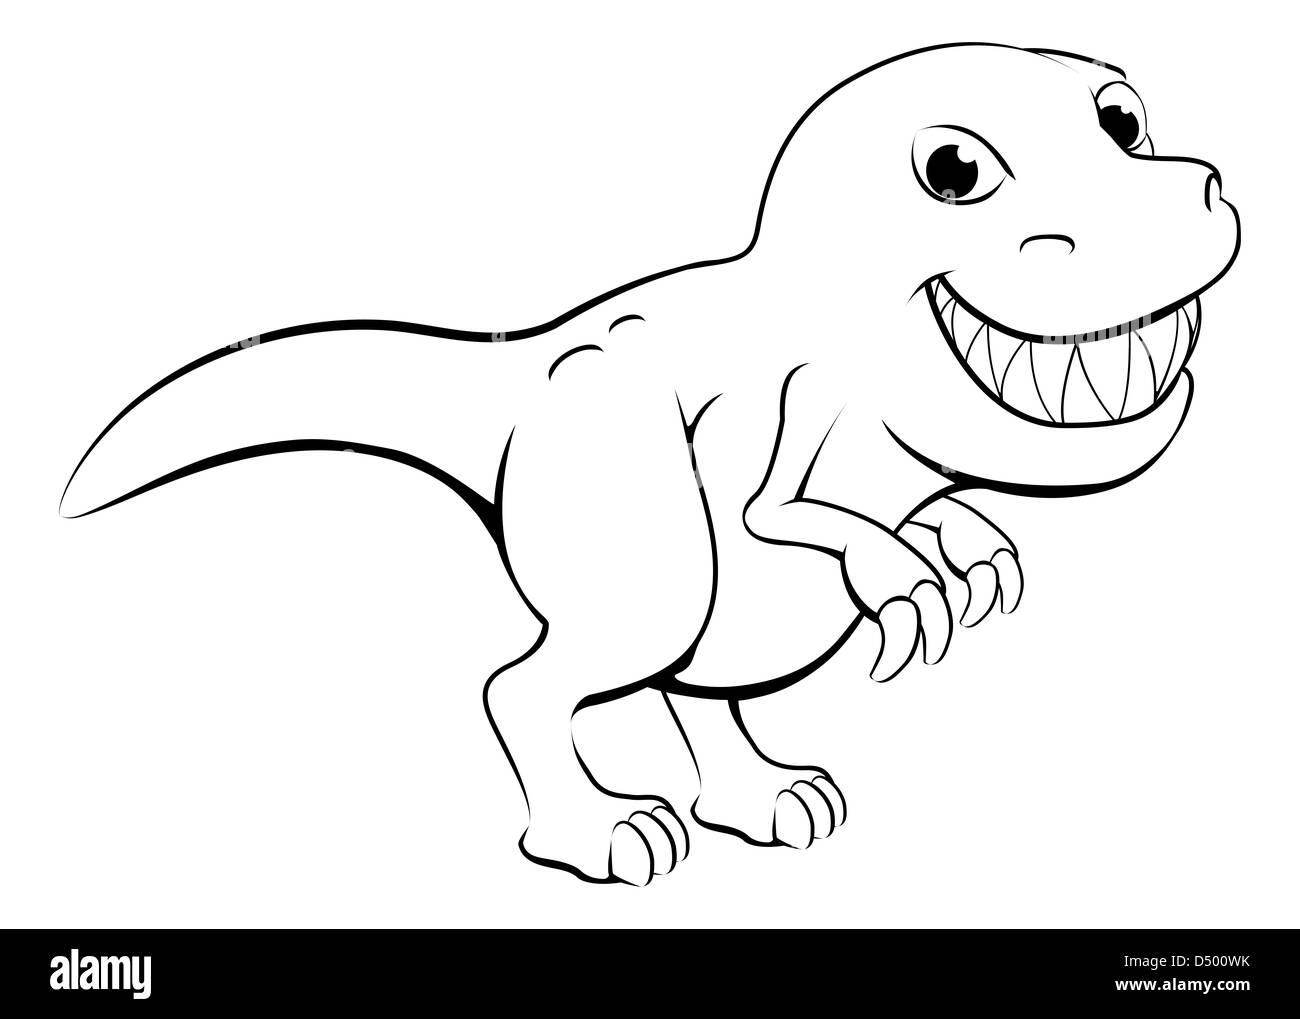 Illustration noir et blanc d'un dessin animé dinosaure t rex heureux Banque D'Images